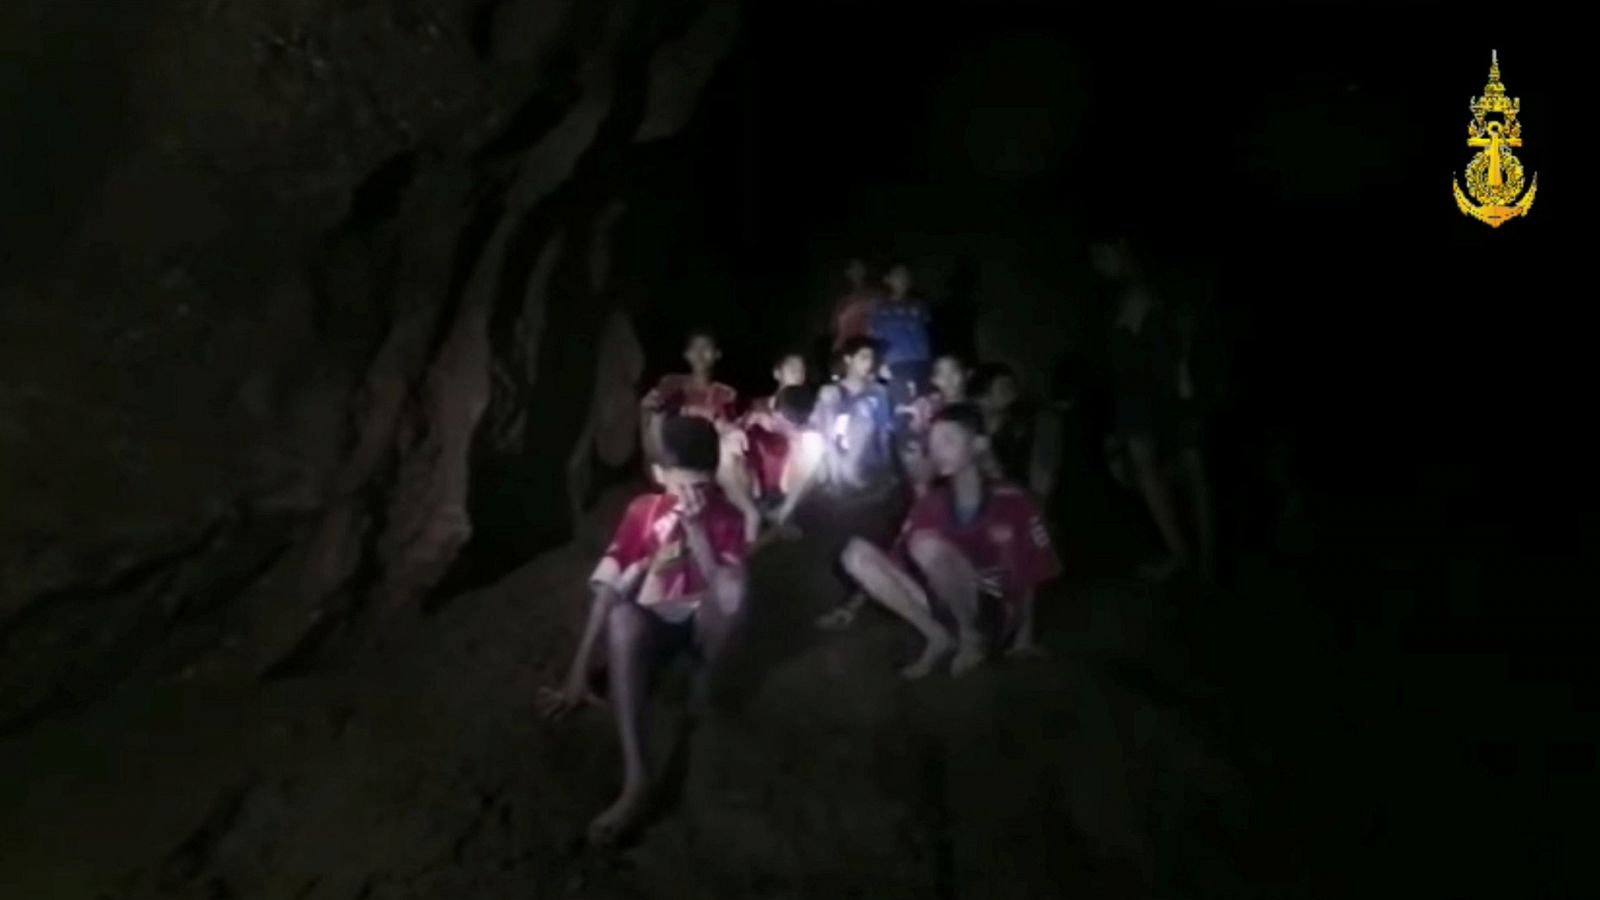 Telediario 1: Los equipos de rescate quieren enseñar a bucear a los niños atrapados en la cueva | RTVE Play